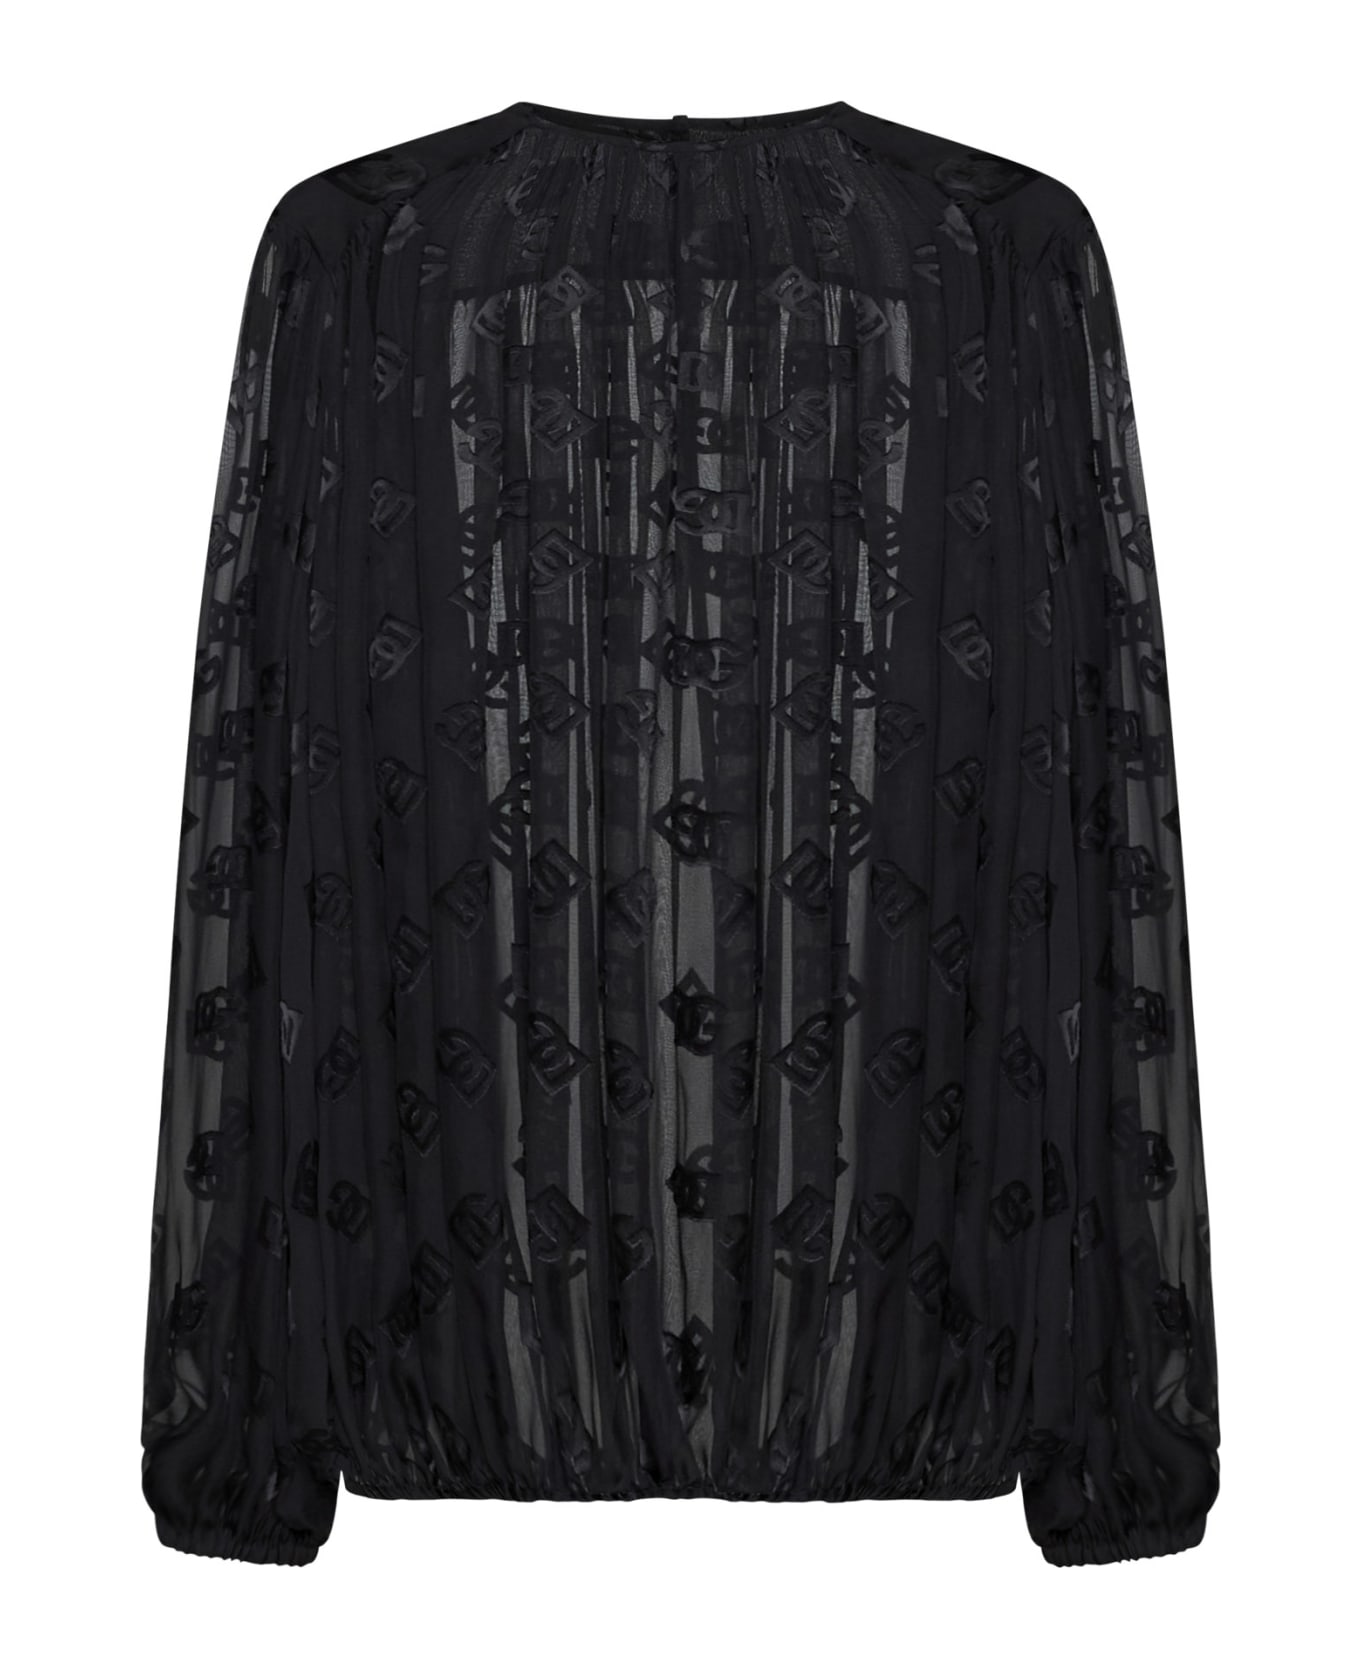 Dolce & Gabbana Shirt - Black ブラウス